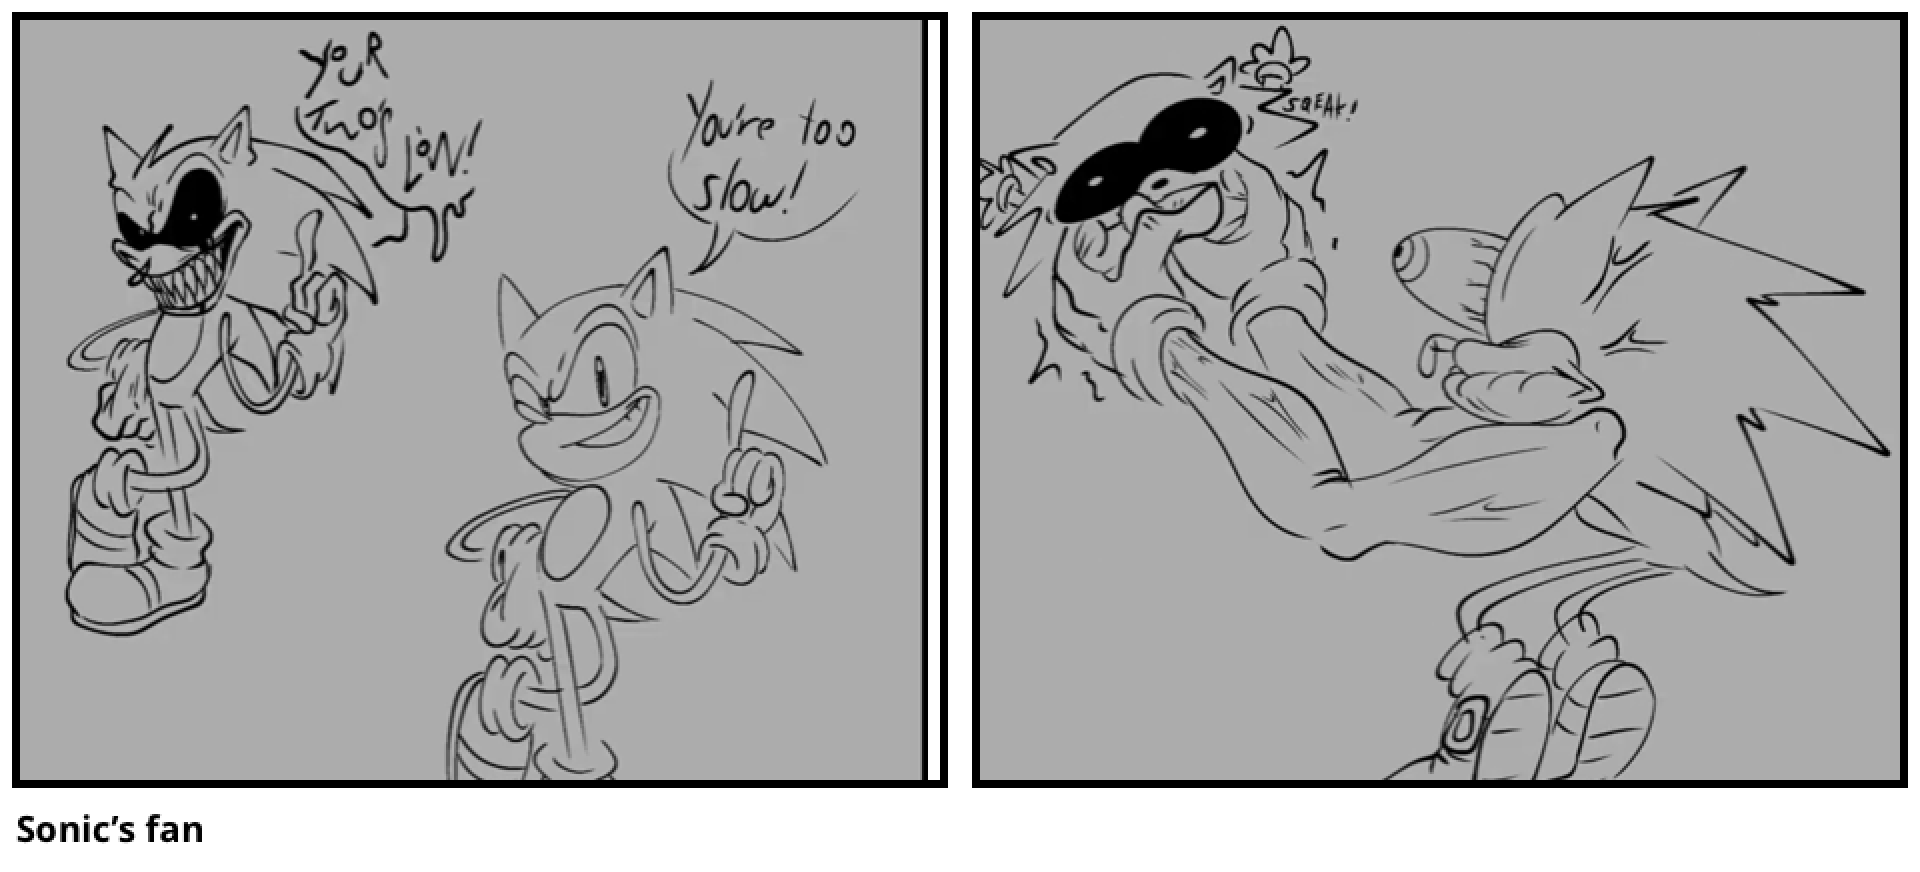 Sonic’s fan